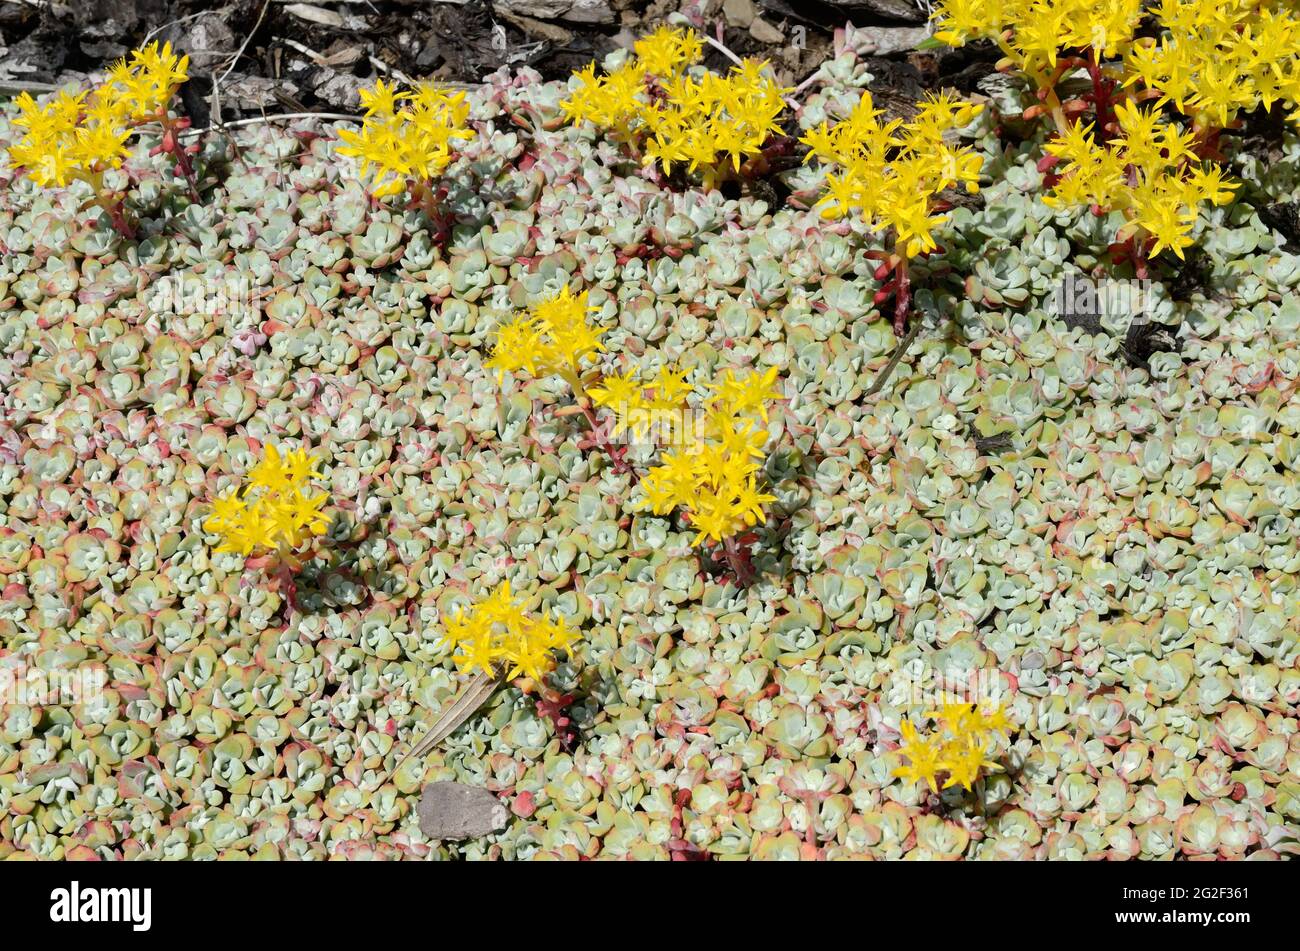 Bright yellow flowers of Sedum spathuliflium purpureum mat-forming evergreen perennial Stock Photo